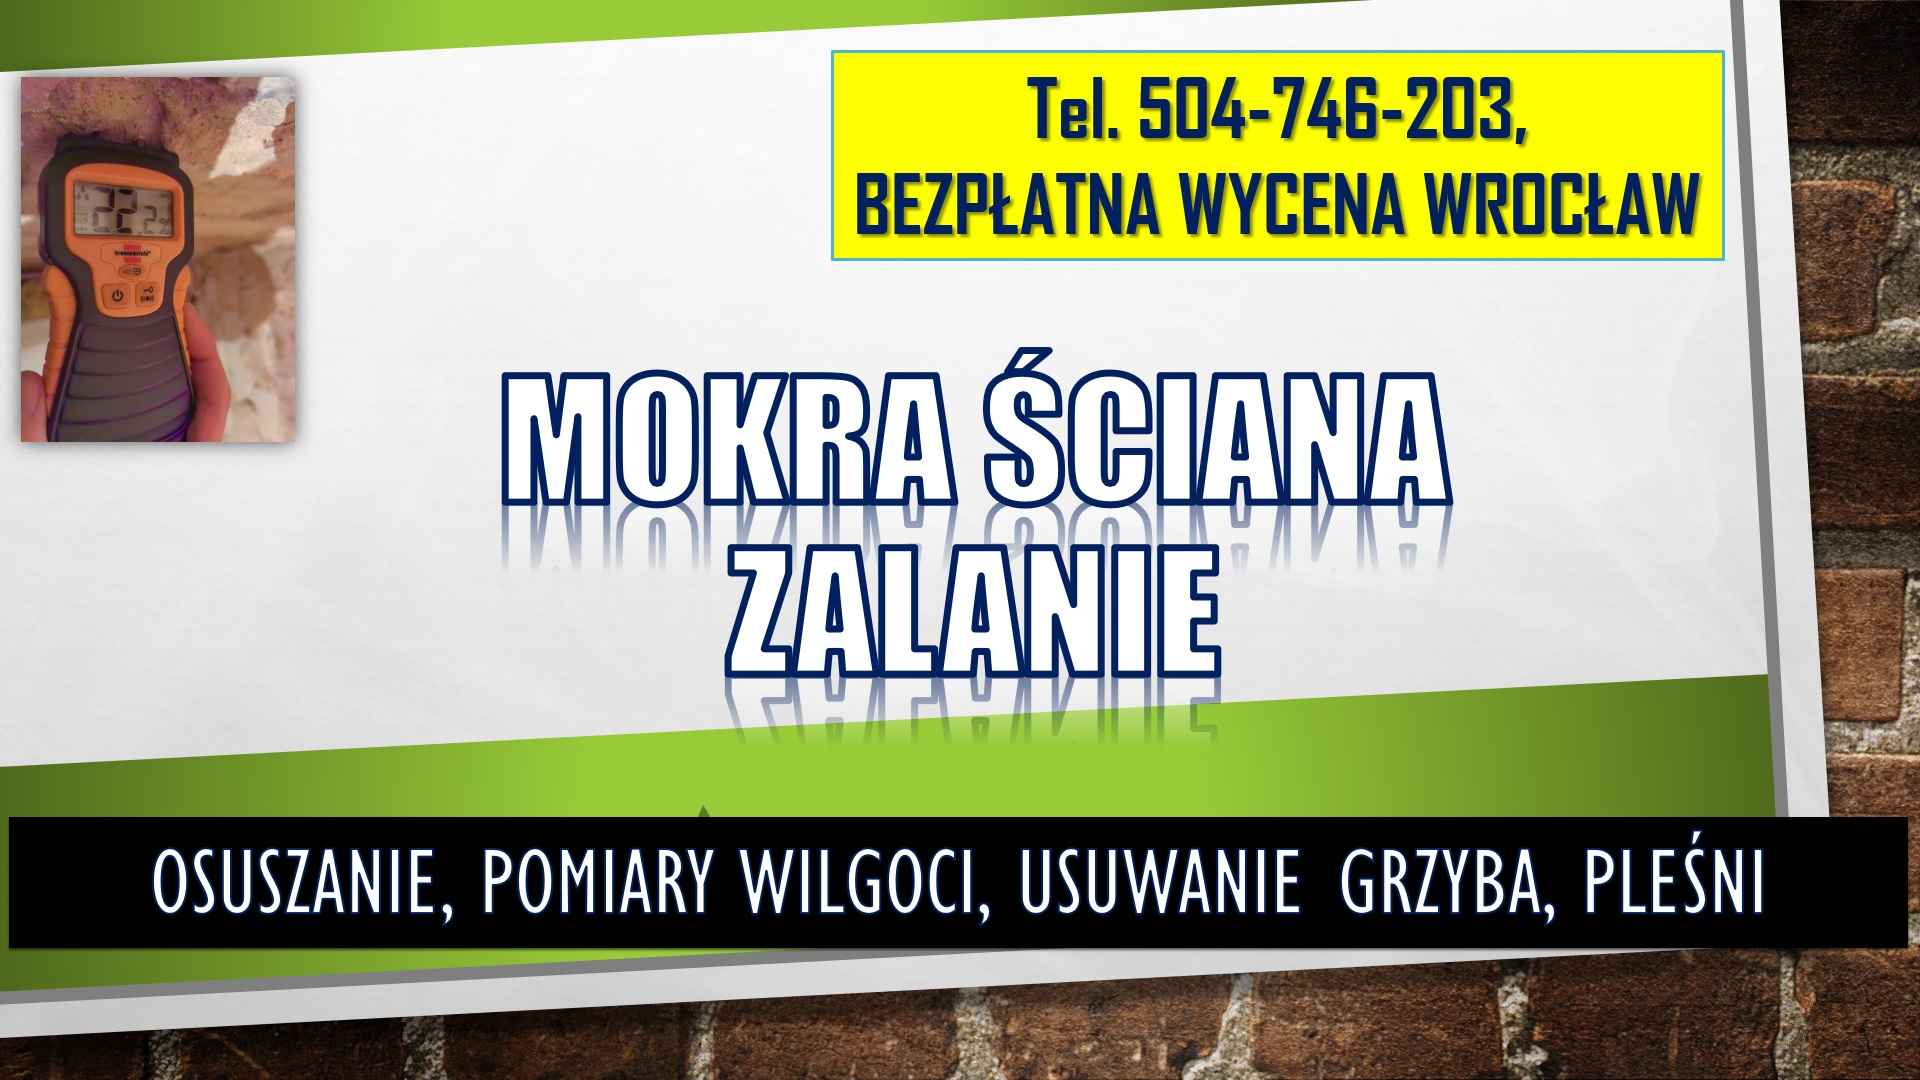 Osuszenie mokrej ściany, t 504746203, Wroclaw, cena,  mokra ściana Psie Pole - zdjęcie 4